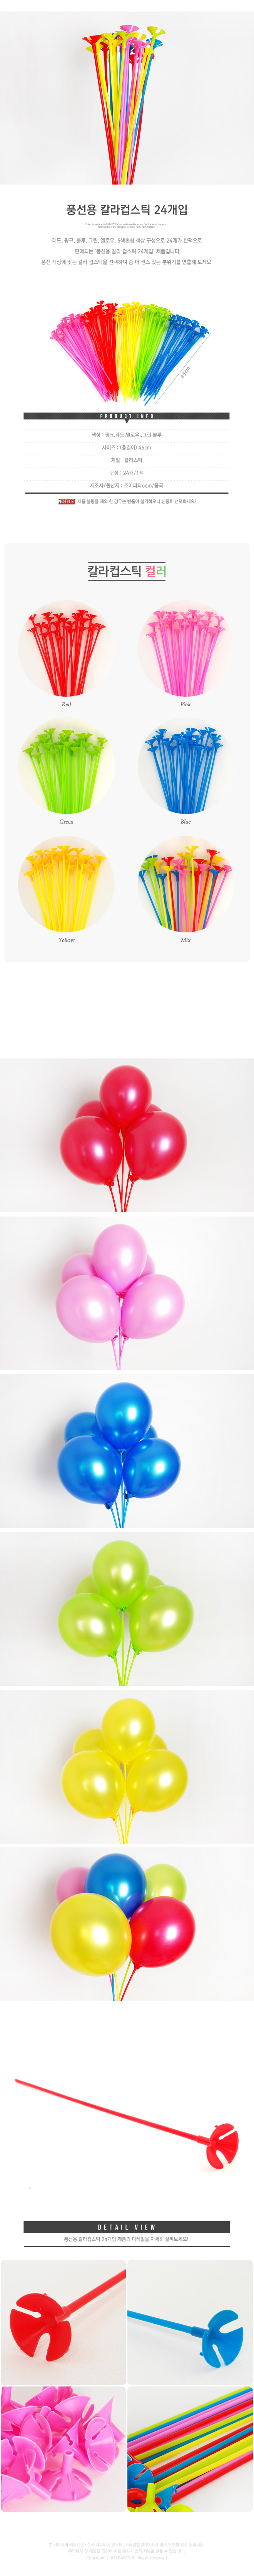 balloonst24p_roll.jpg